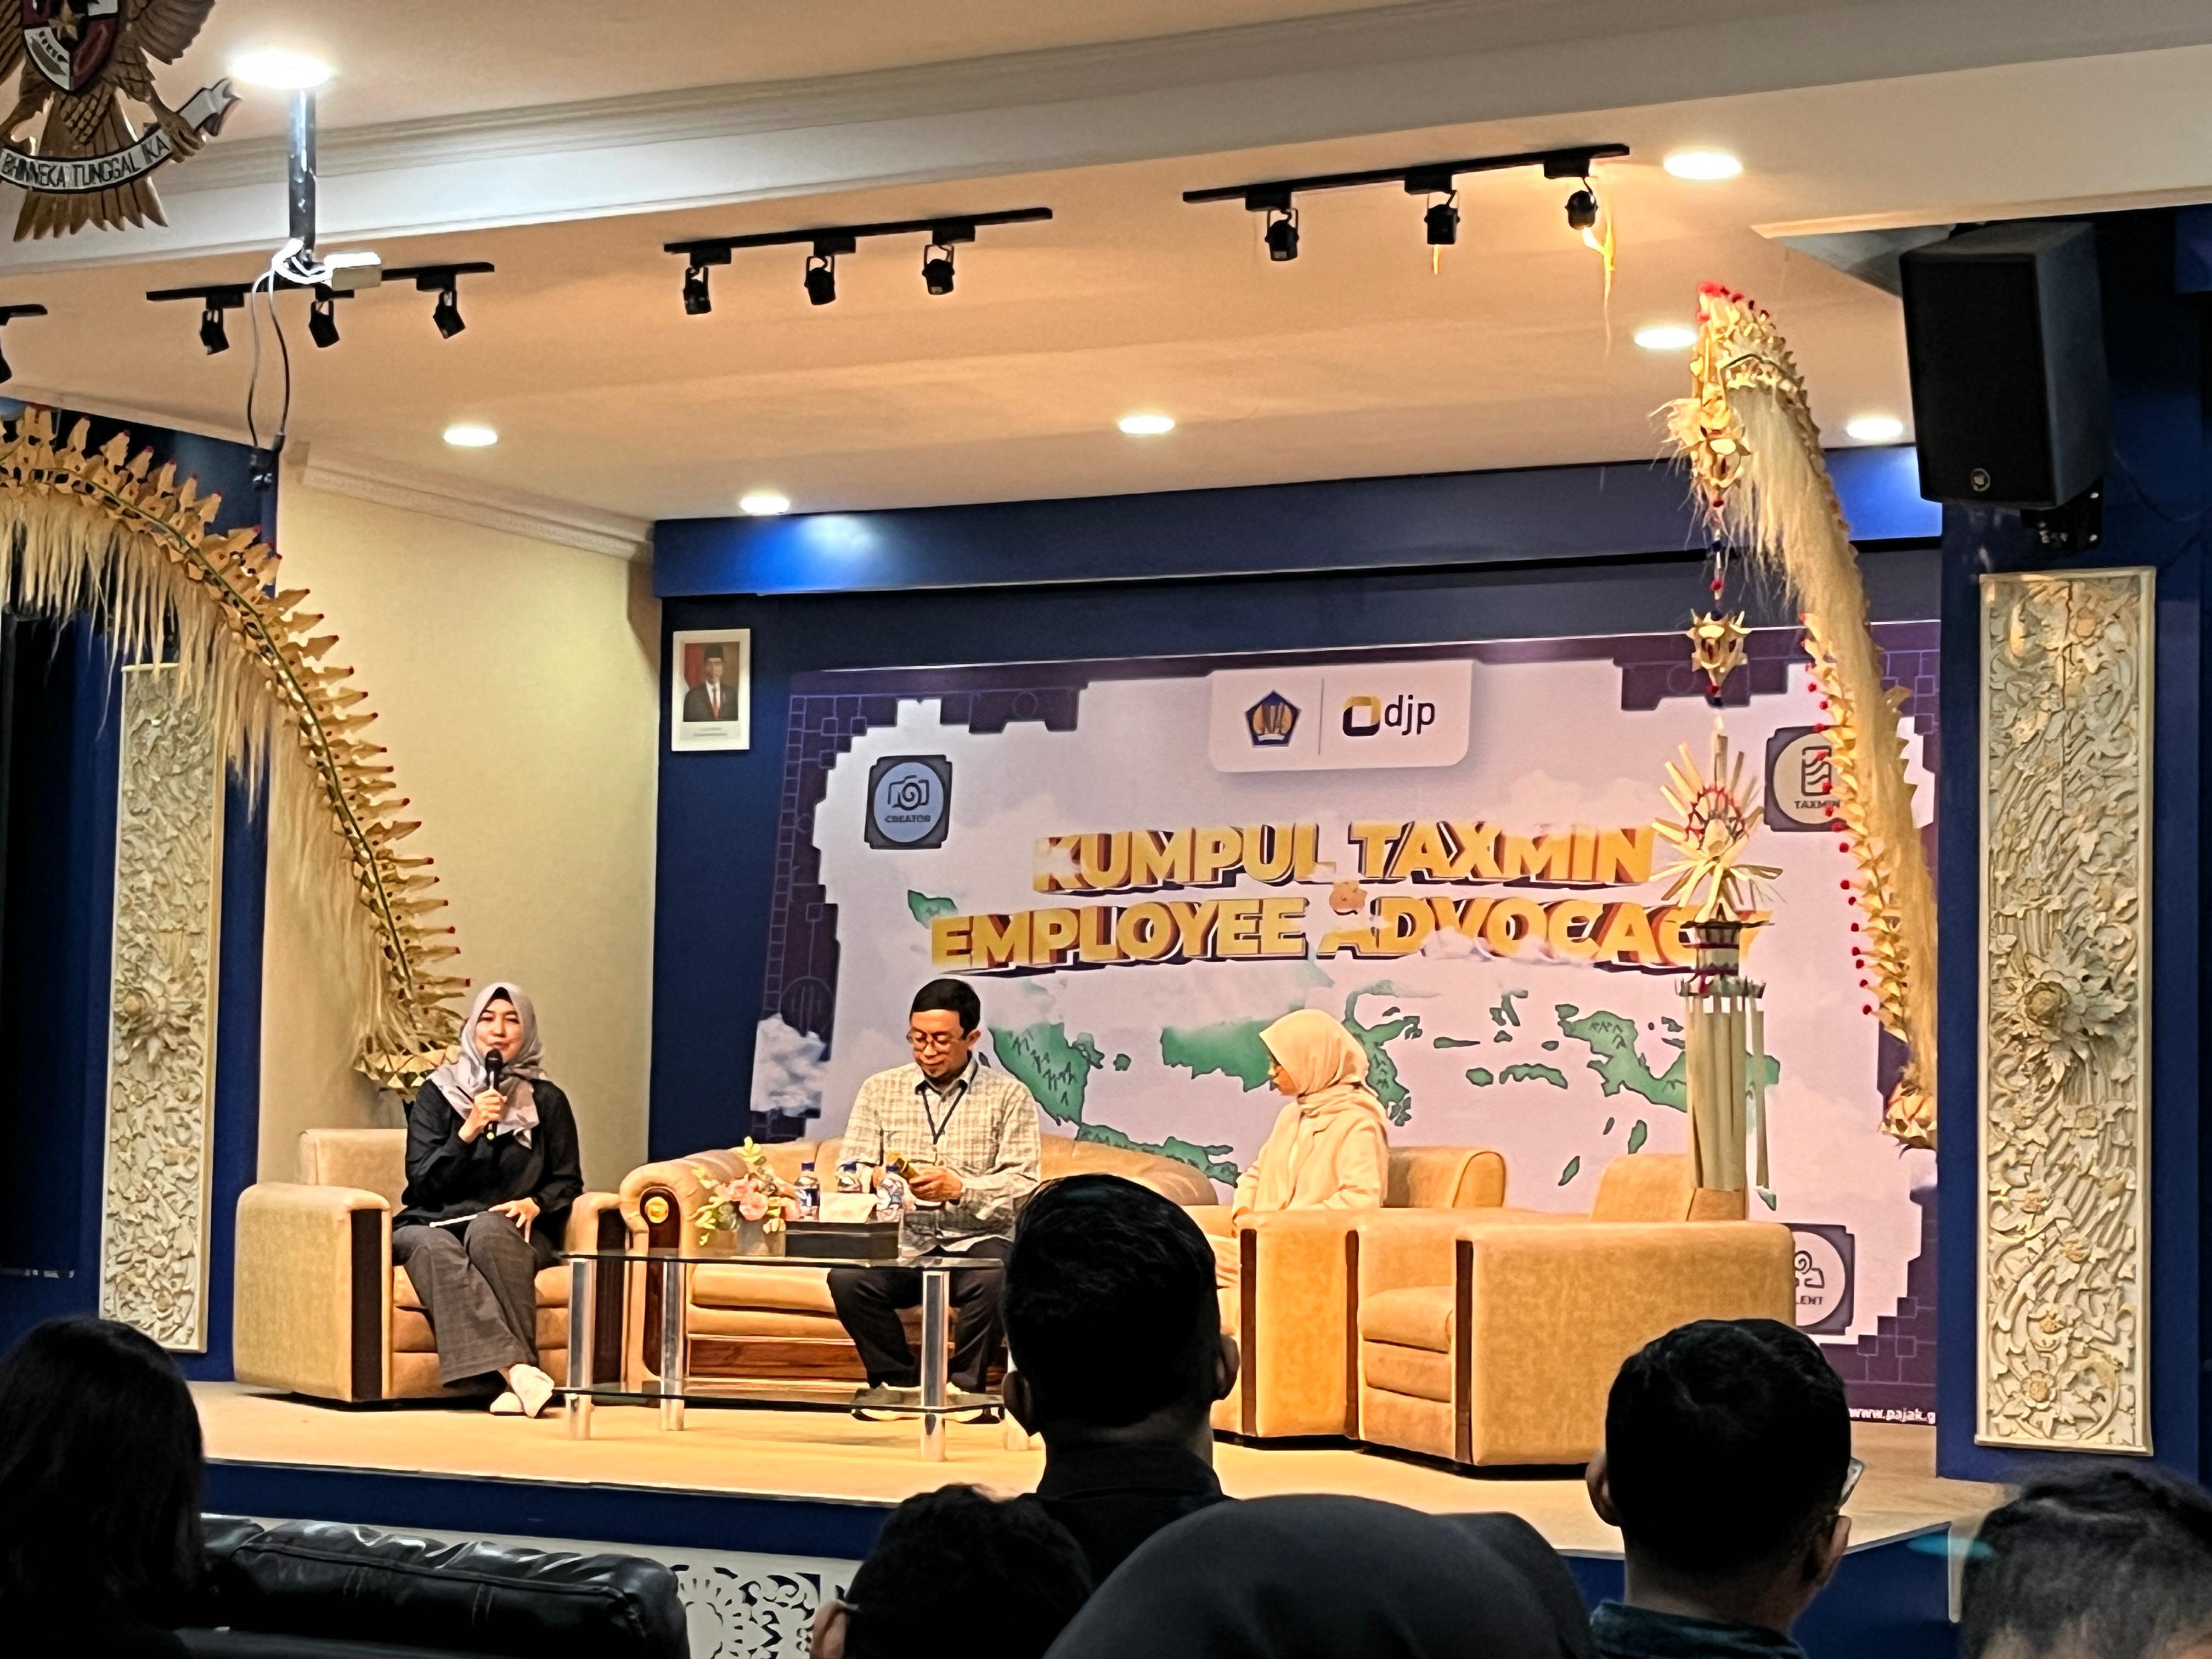 Kanwil DJKN Bali dan Nusa Tenggara Hadiri Kumpul Taxmin dan Employee Advocacy